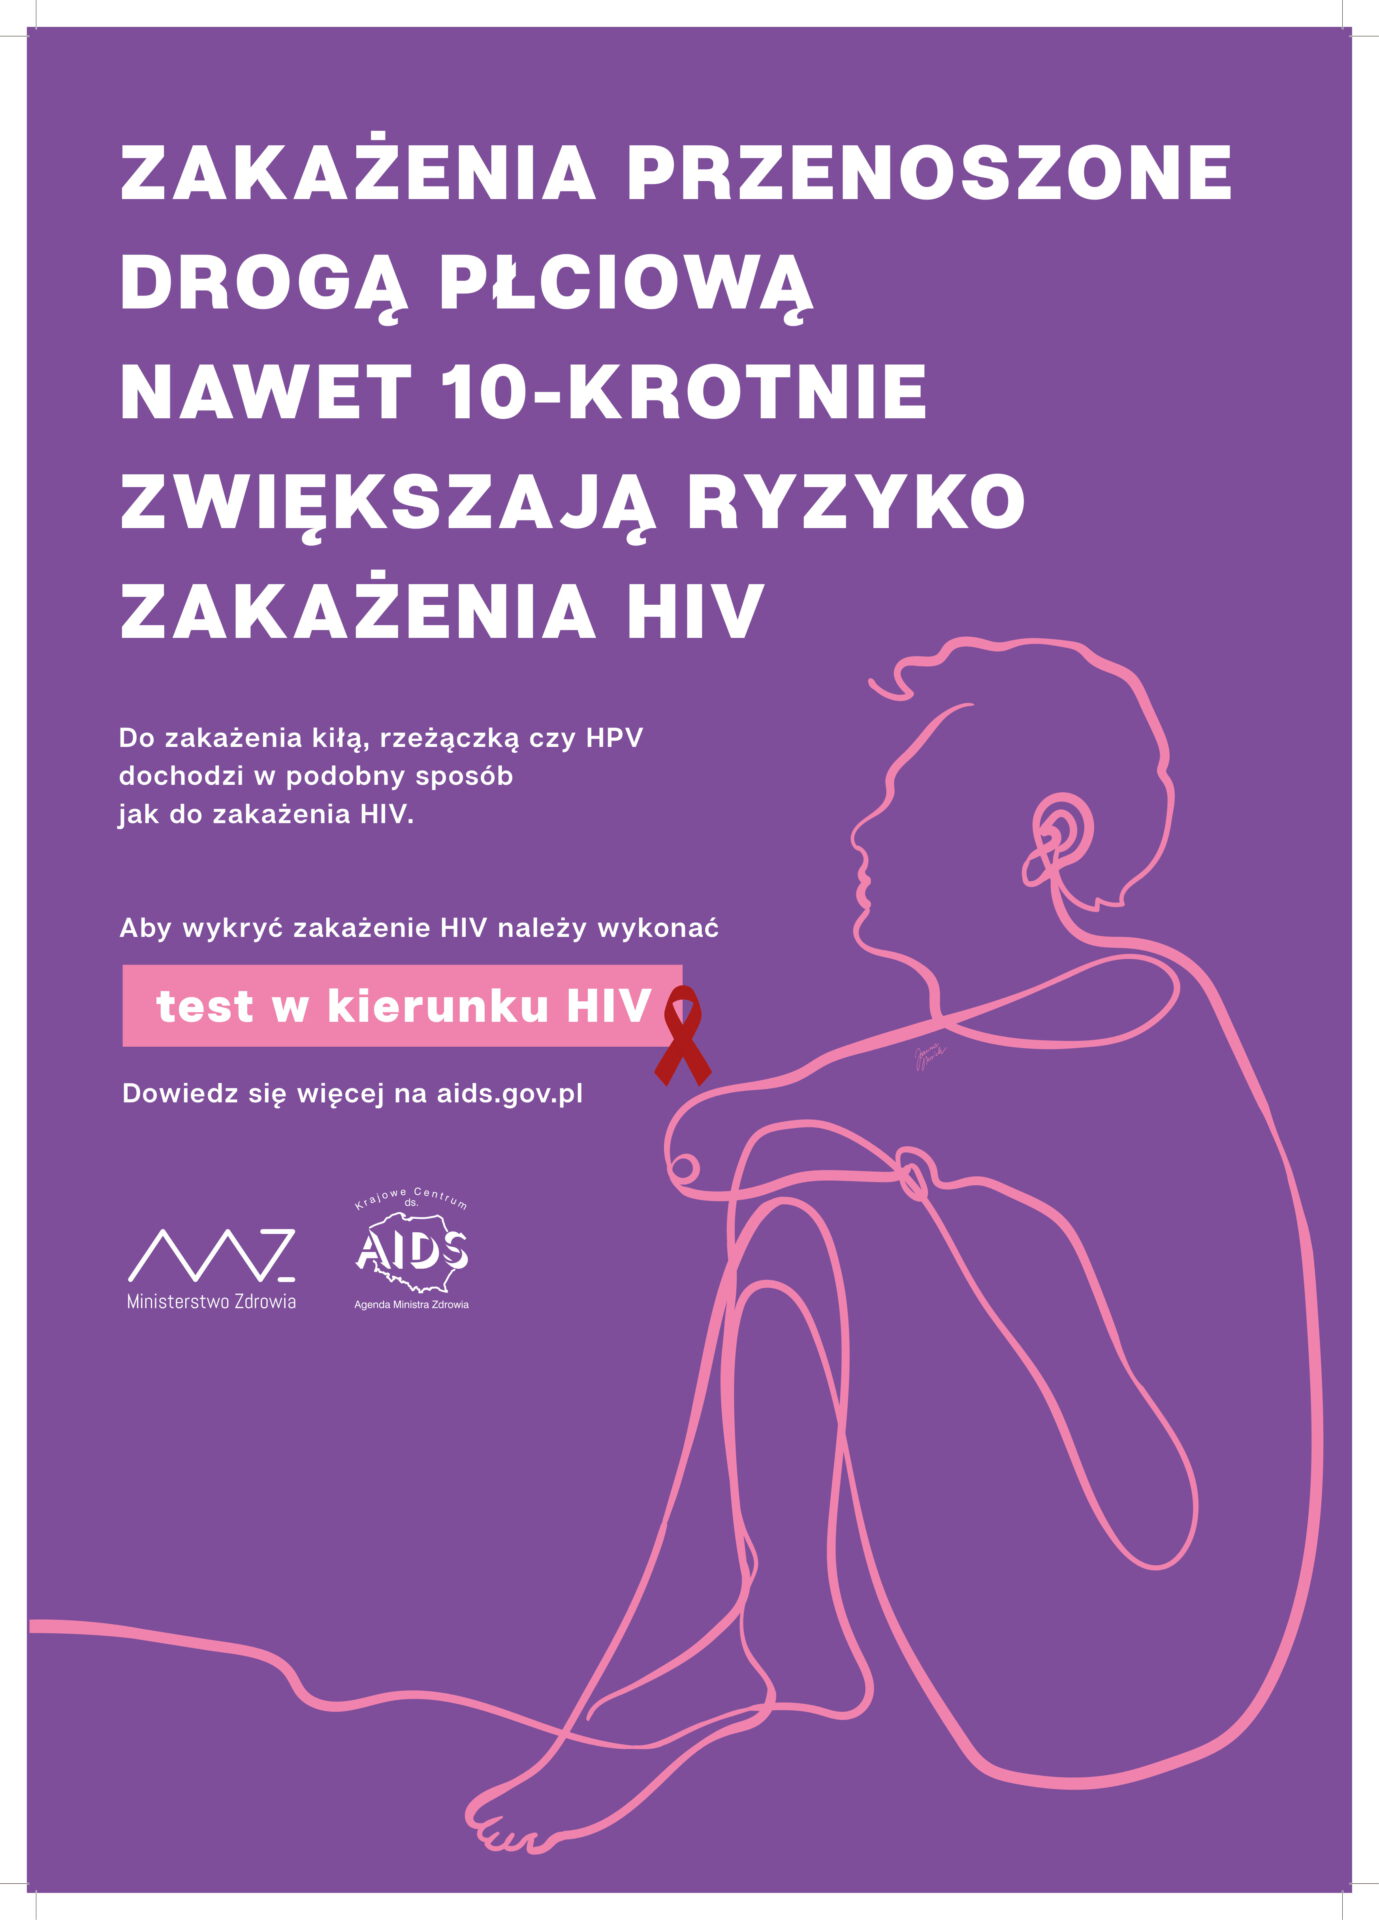 Plakat dotyczący HIV